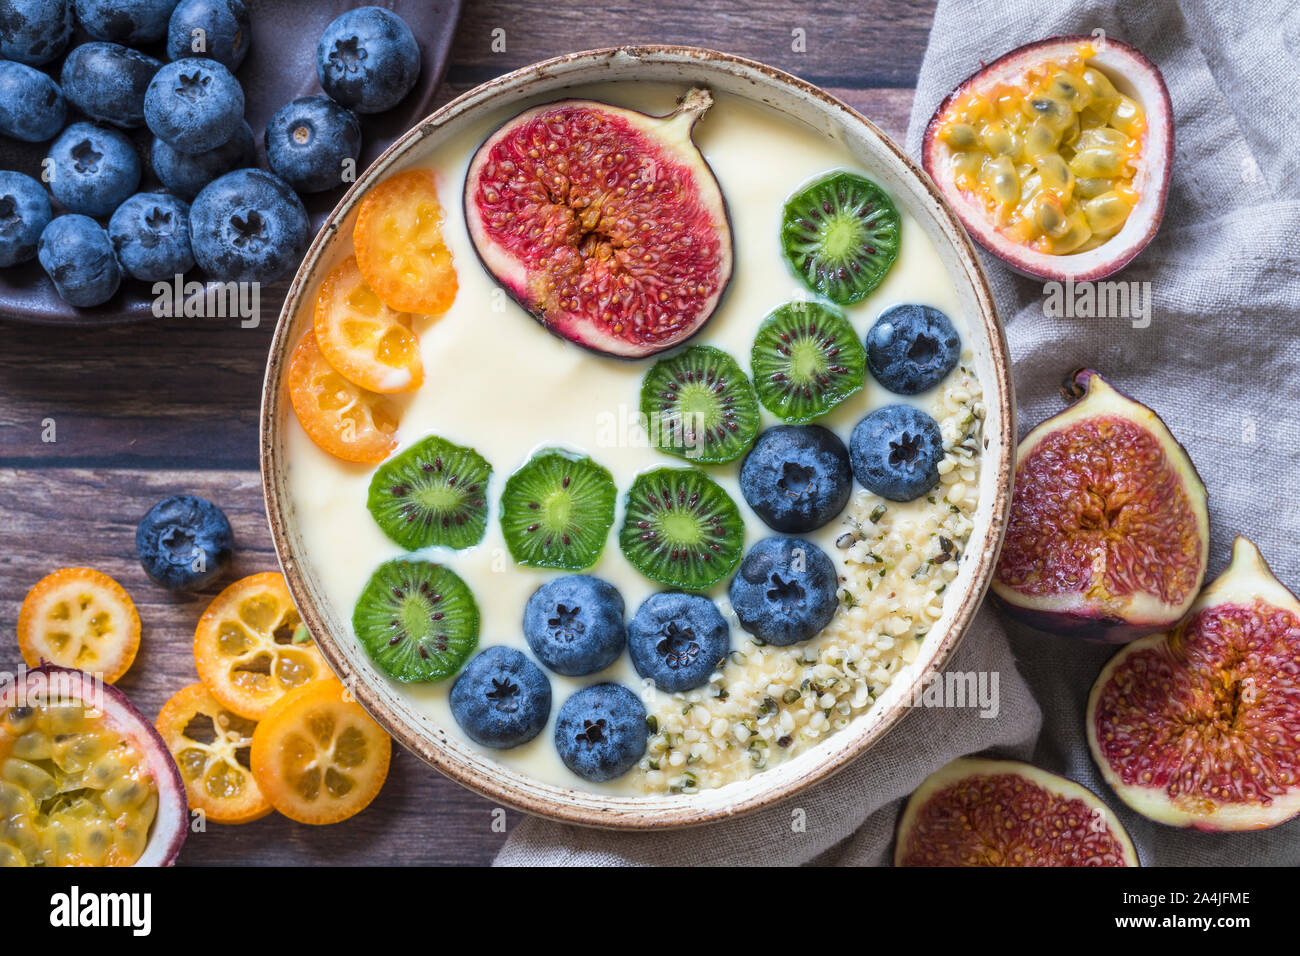 Einen frischen organischen Joghurt smoothie Schale von oben gesehen mit einer Variation von frischen Früchten - Heidelbeeren, Kiwis, Feigen, Passionsfrucht und kumquat. Einige Stockfoto